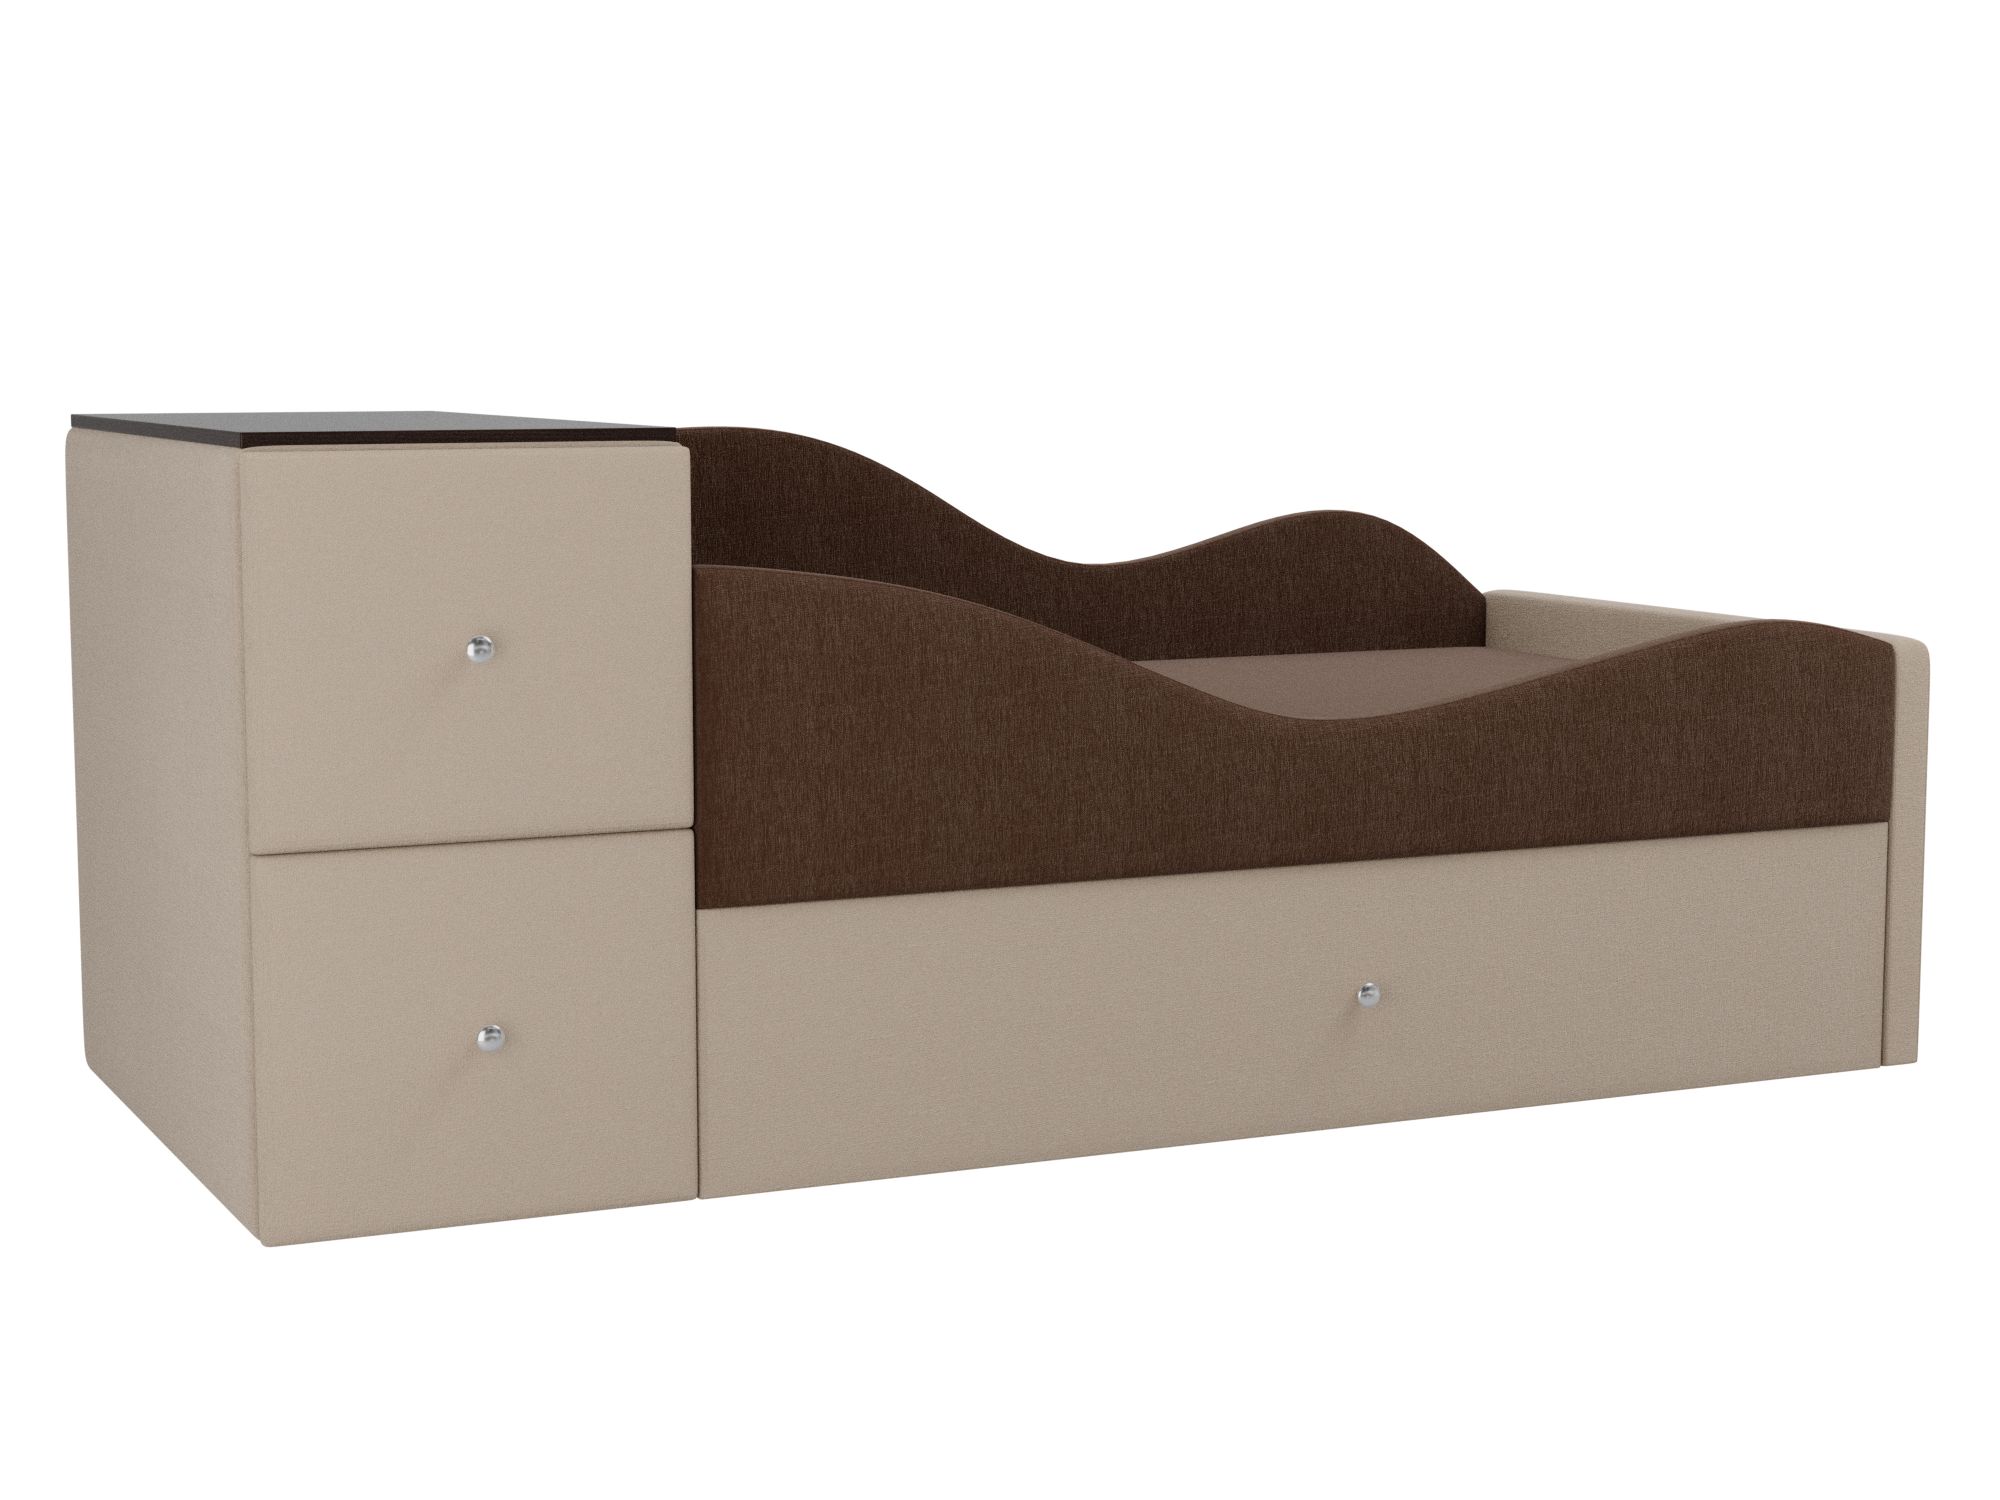 Детская кровать Дельта Правый угол Коричневый, Бежевый, ЛДСП детская кровать мебелико делюкс рогожка коричневый